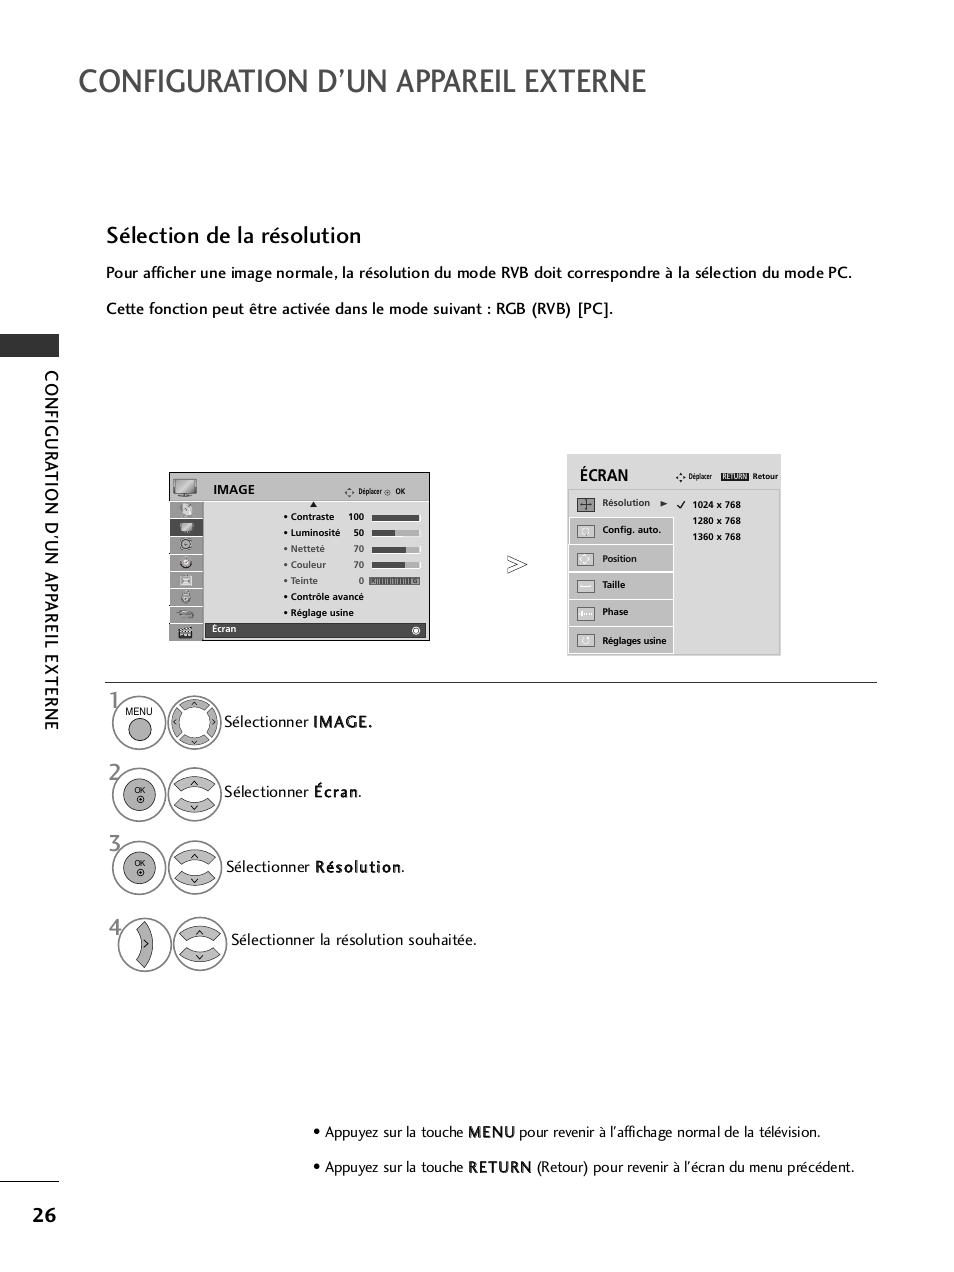 Configuration d’un appareil externe, Sélection de la résolution, Configur a tion d'un app areil externe | LG 50PQ6000 Manuel d'utilisation | Page 28 / 124